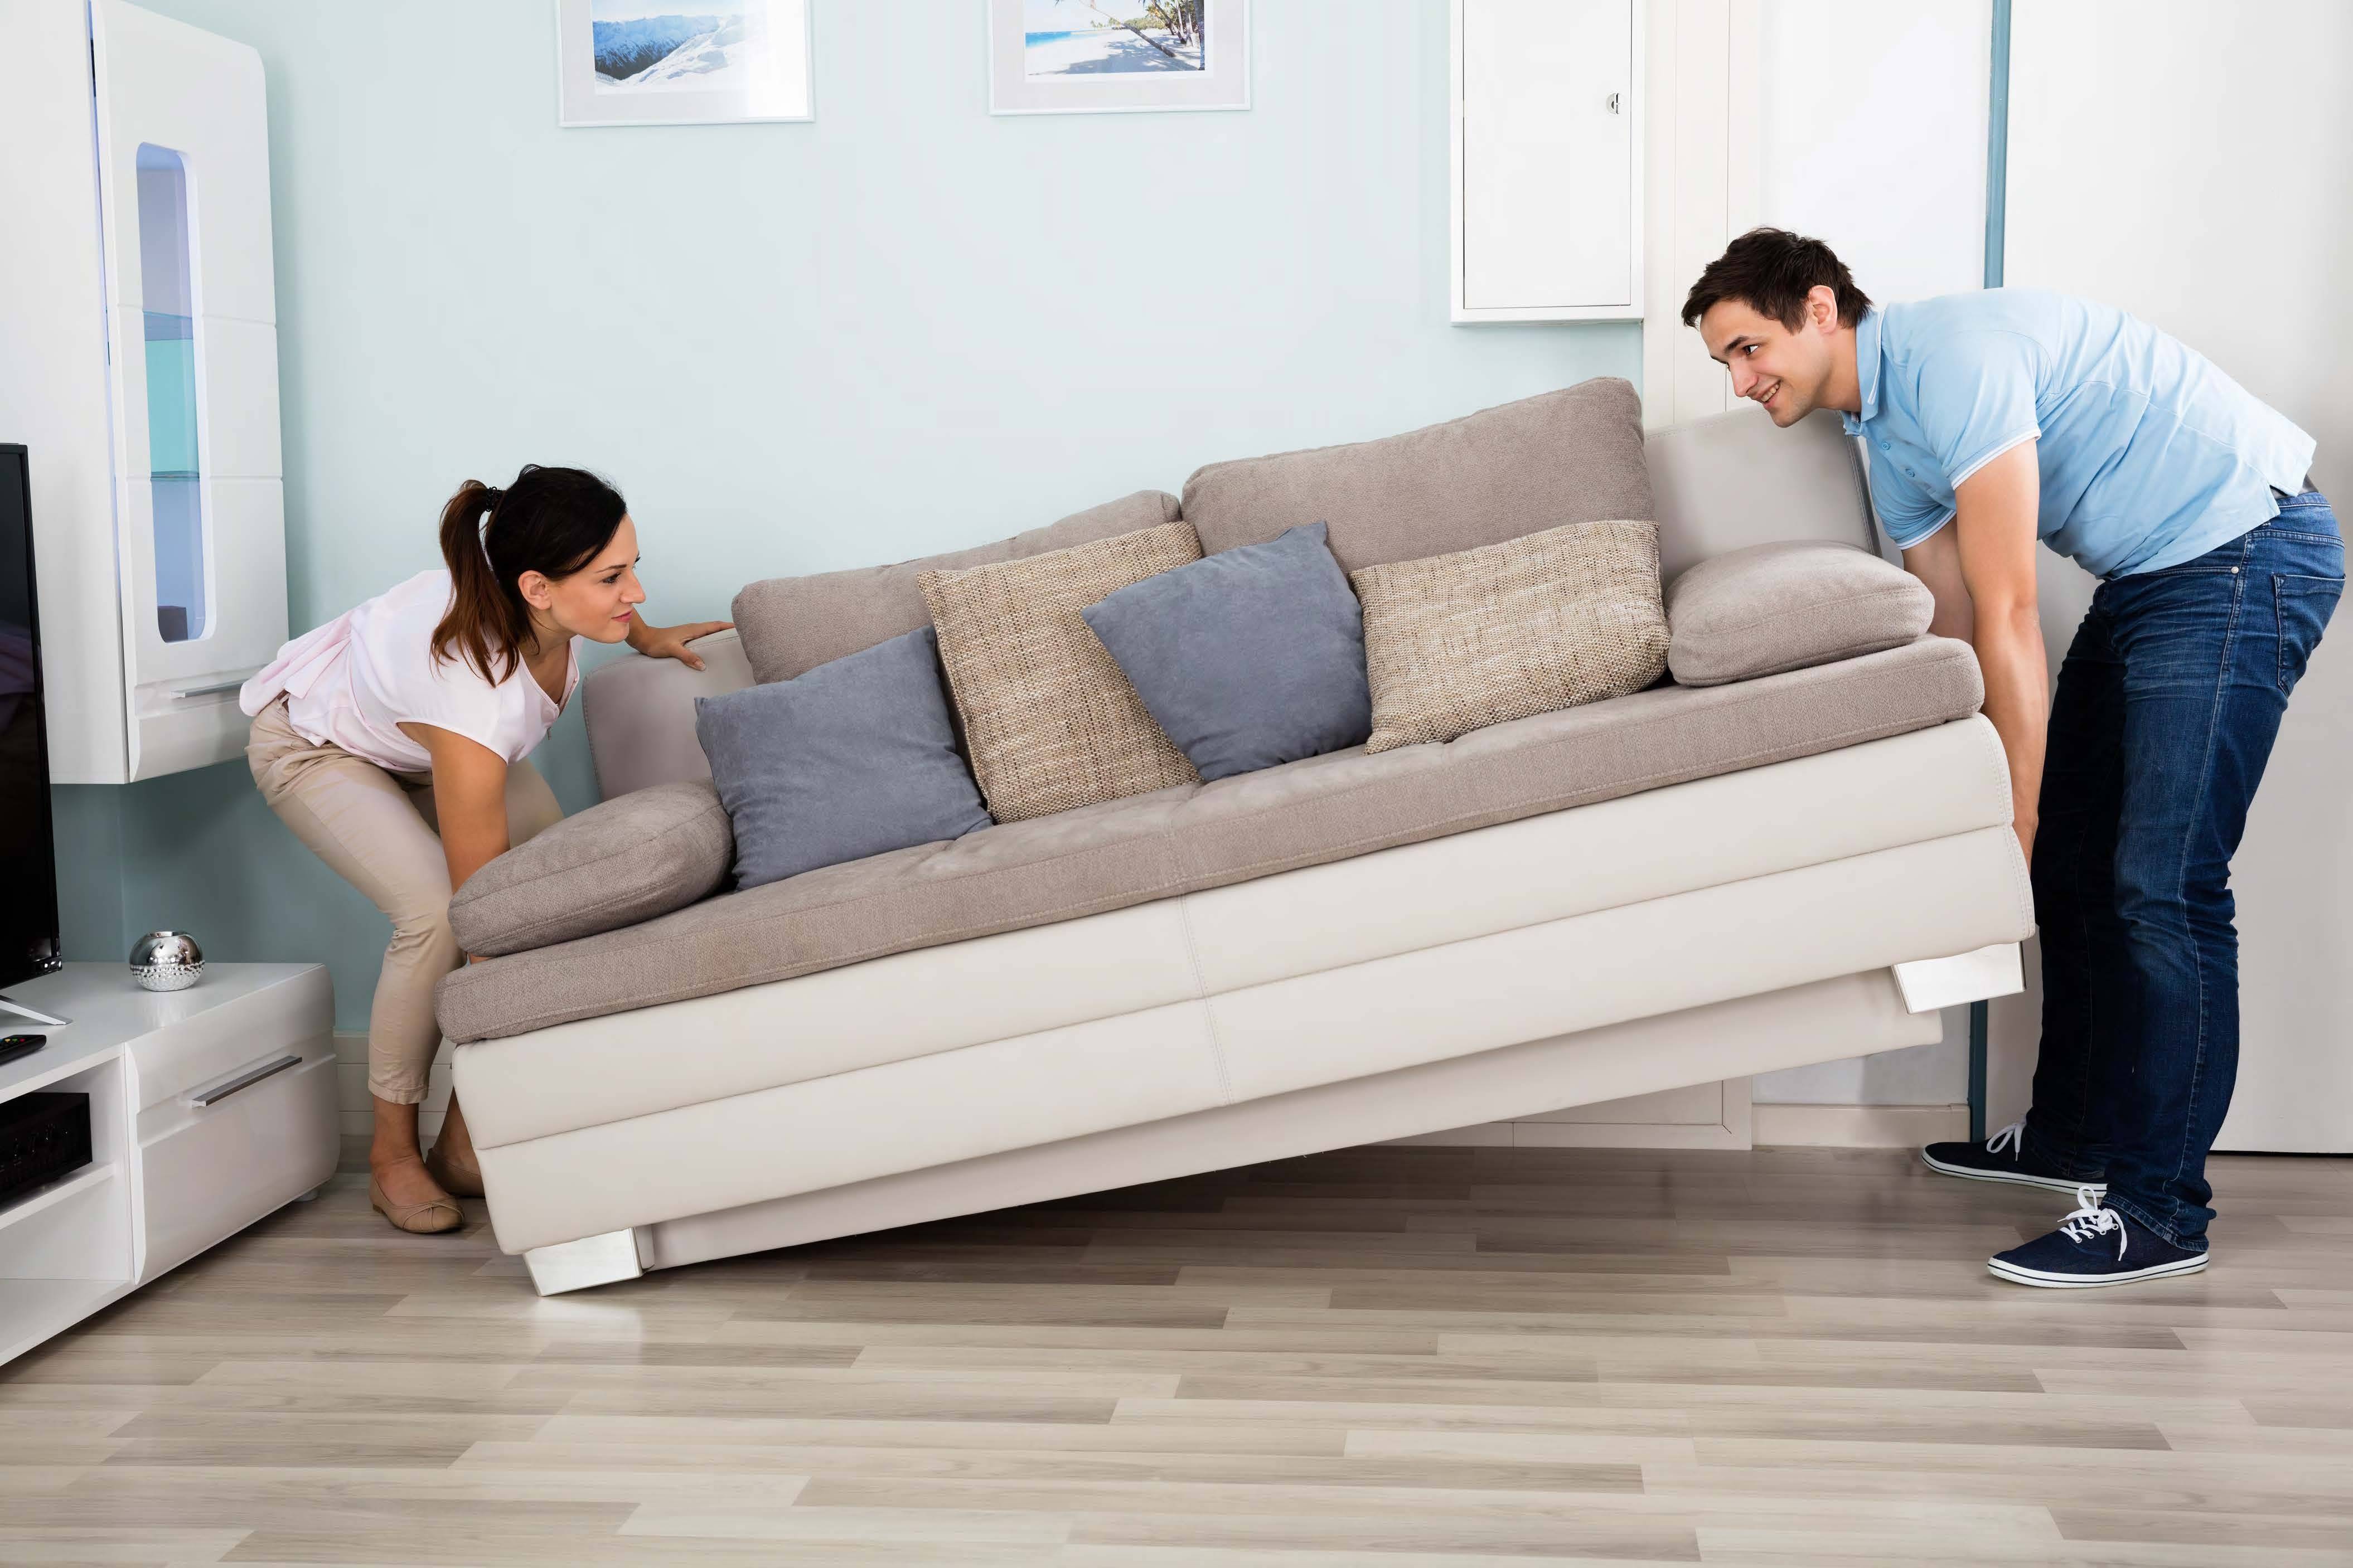 Как выбрать диван для сна.на какие параметры обращать внимание